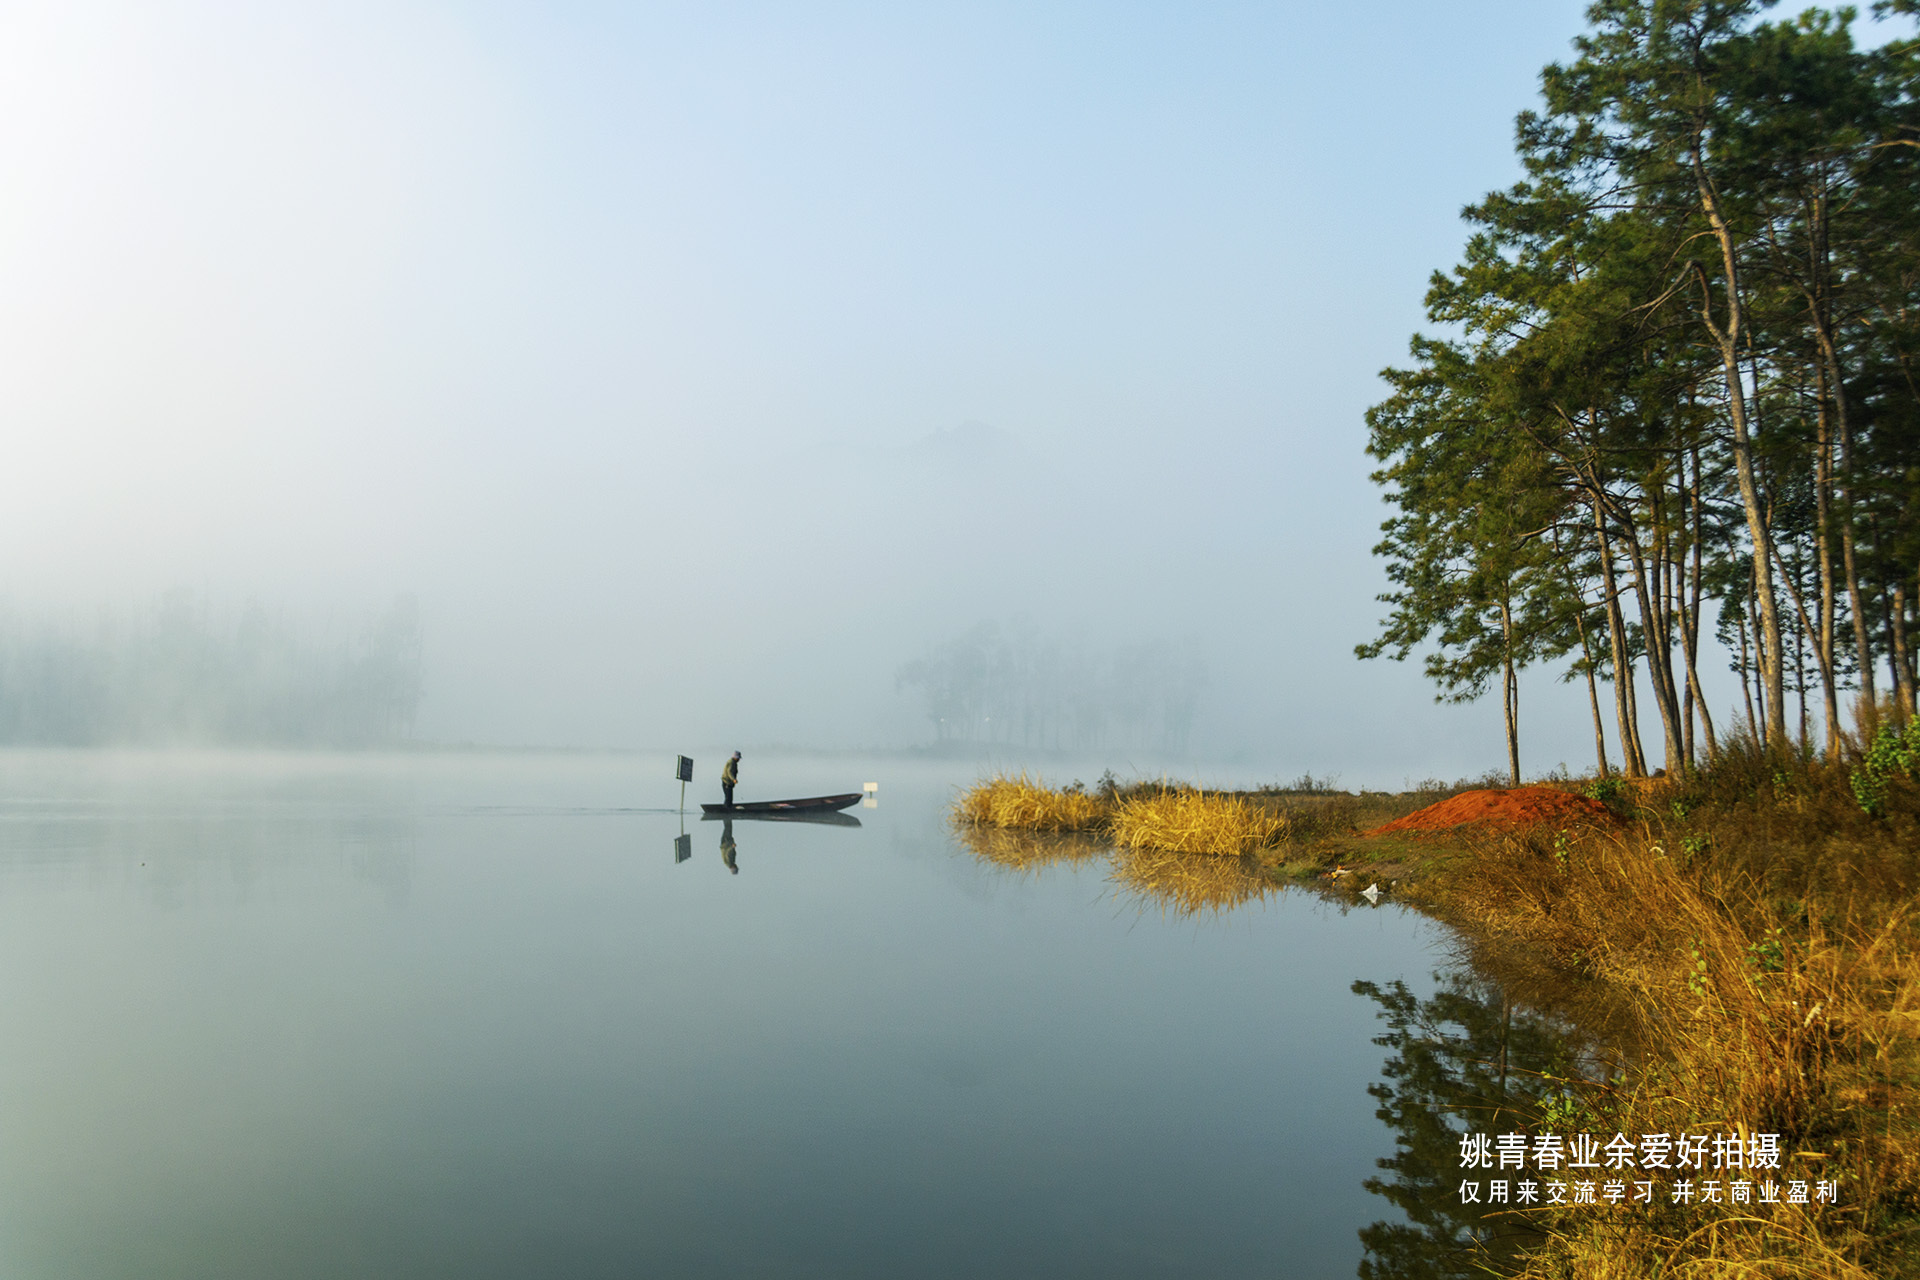 云南旅游攻略自由行路线姚青春自然风光山水风景从上海回老家路过